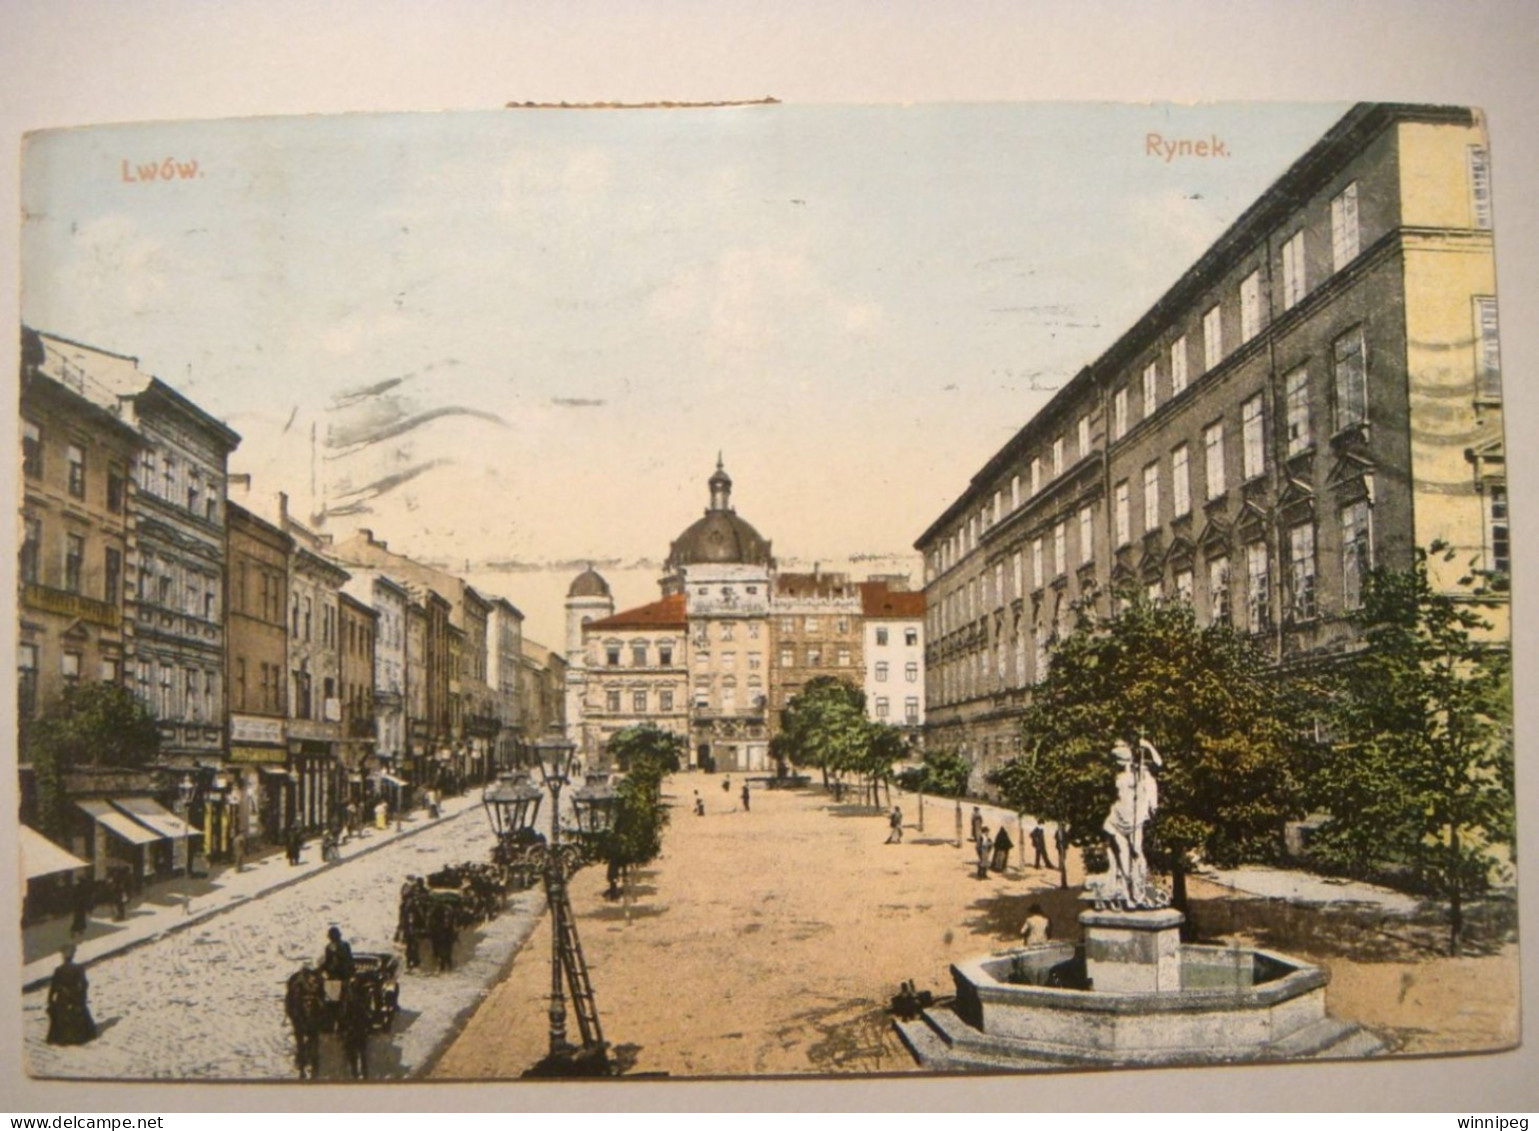 Lwow.Rynek.Lederer & Popper.1910.Poland.Ukraine. - Ukraine